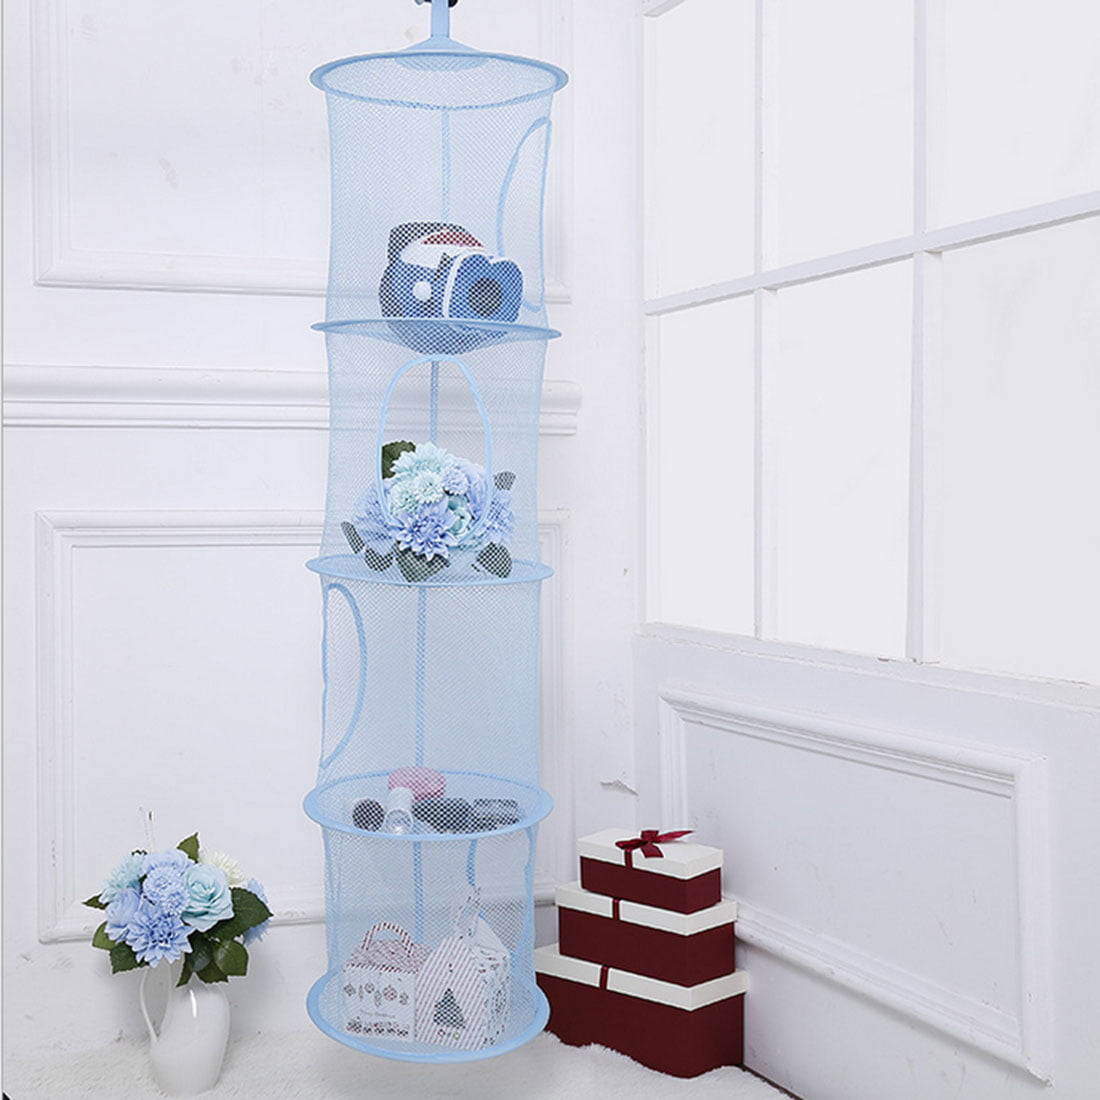 Foldable Four-storeyed Durable Bathroom Hanging Basket Cloth Breathable Mesh Toy Storage Net Bag for Kids Blue ANNA SHOP Hanging Basket 